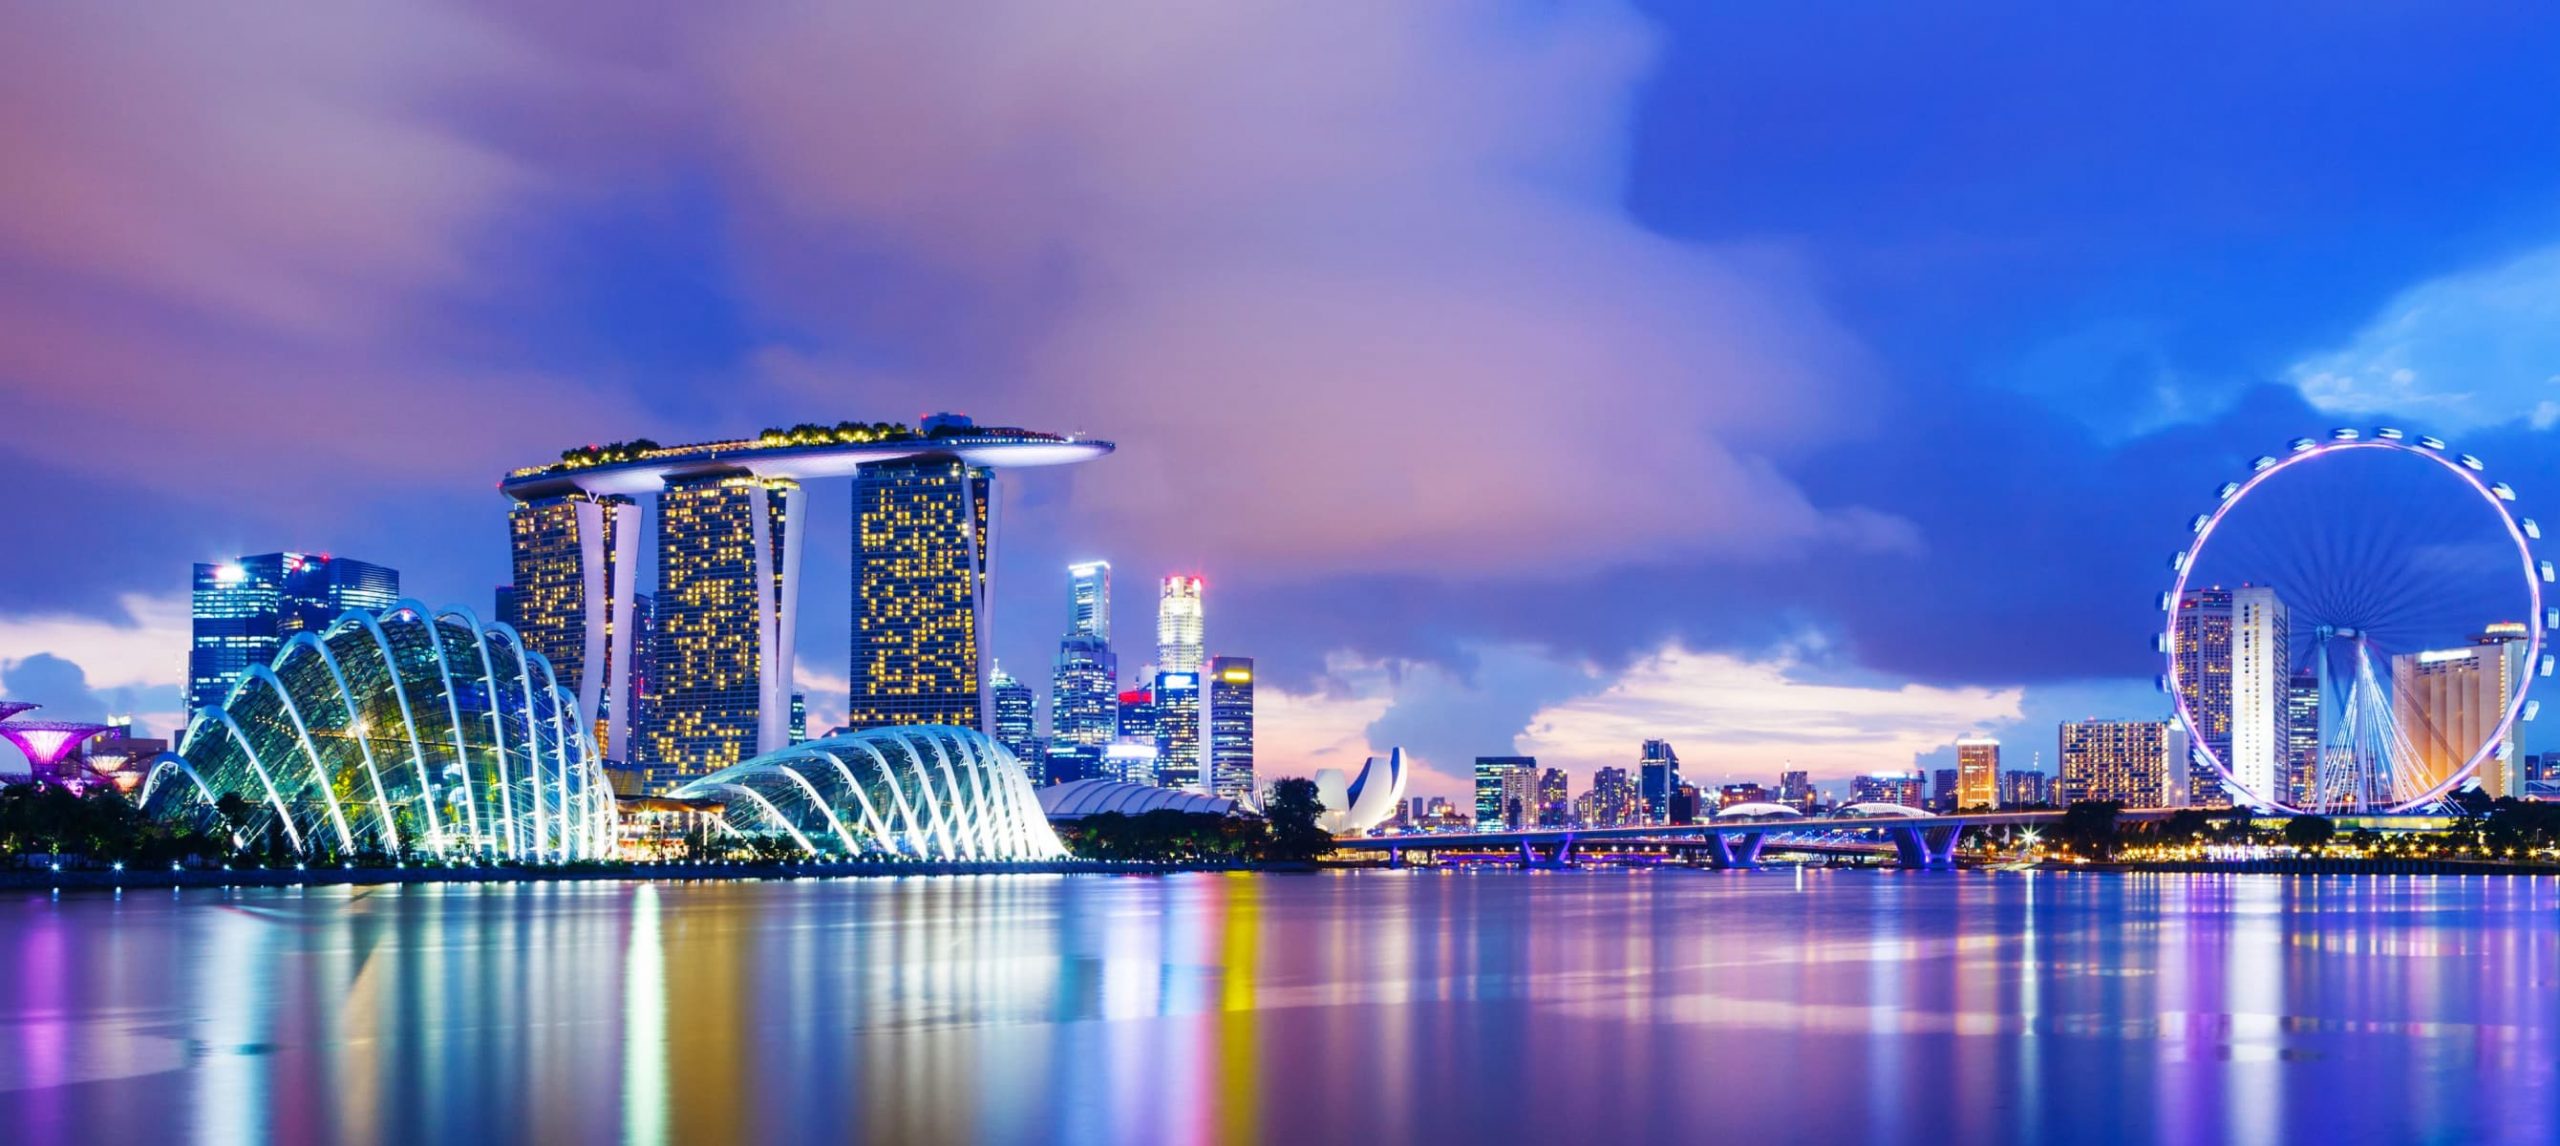 The Singapore skyline at nightime.